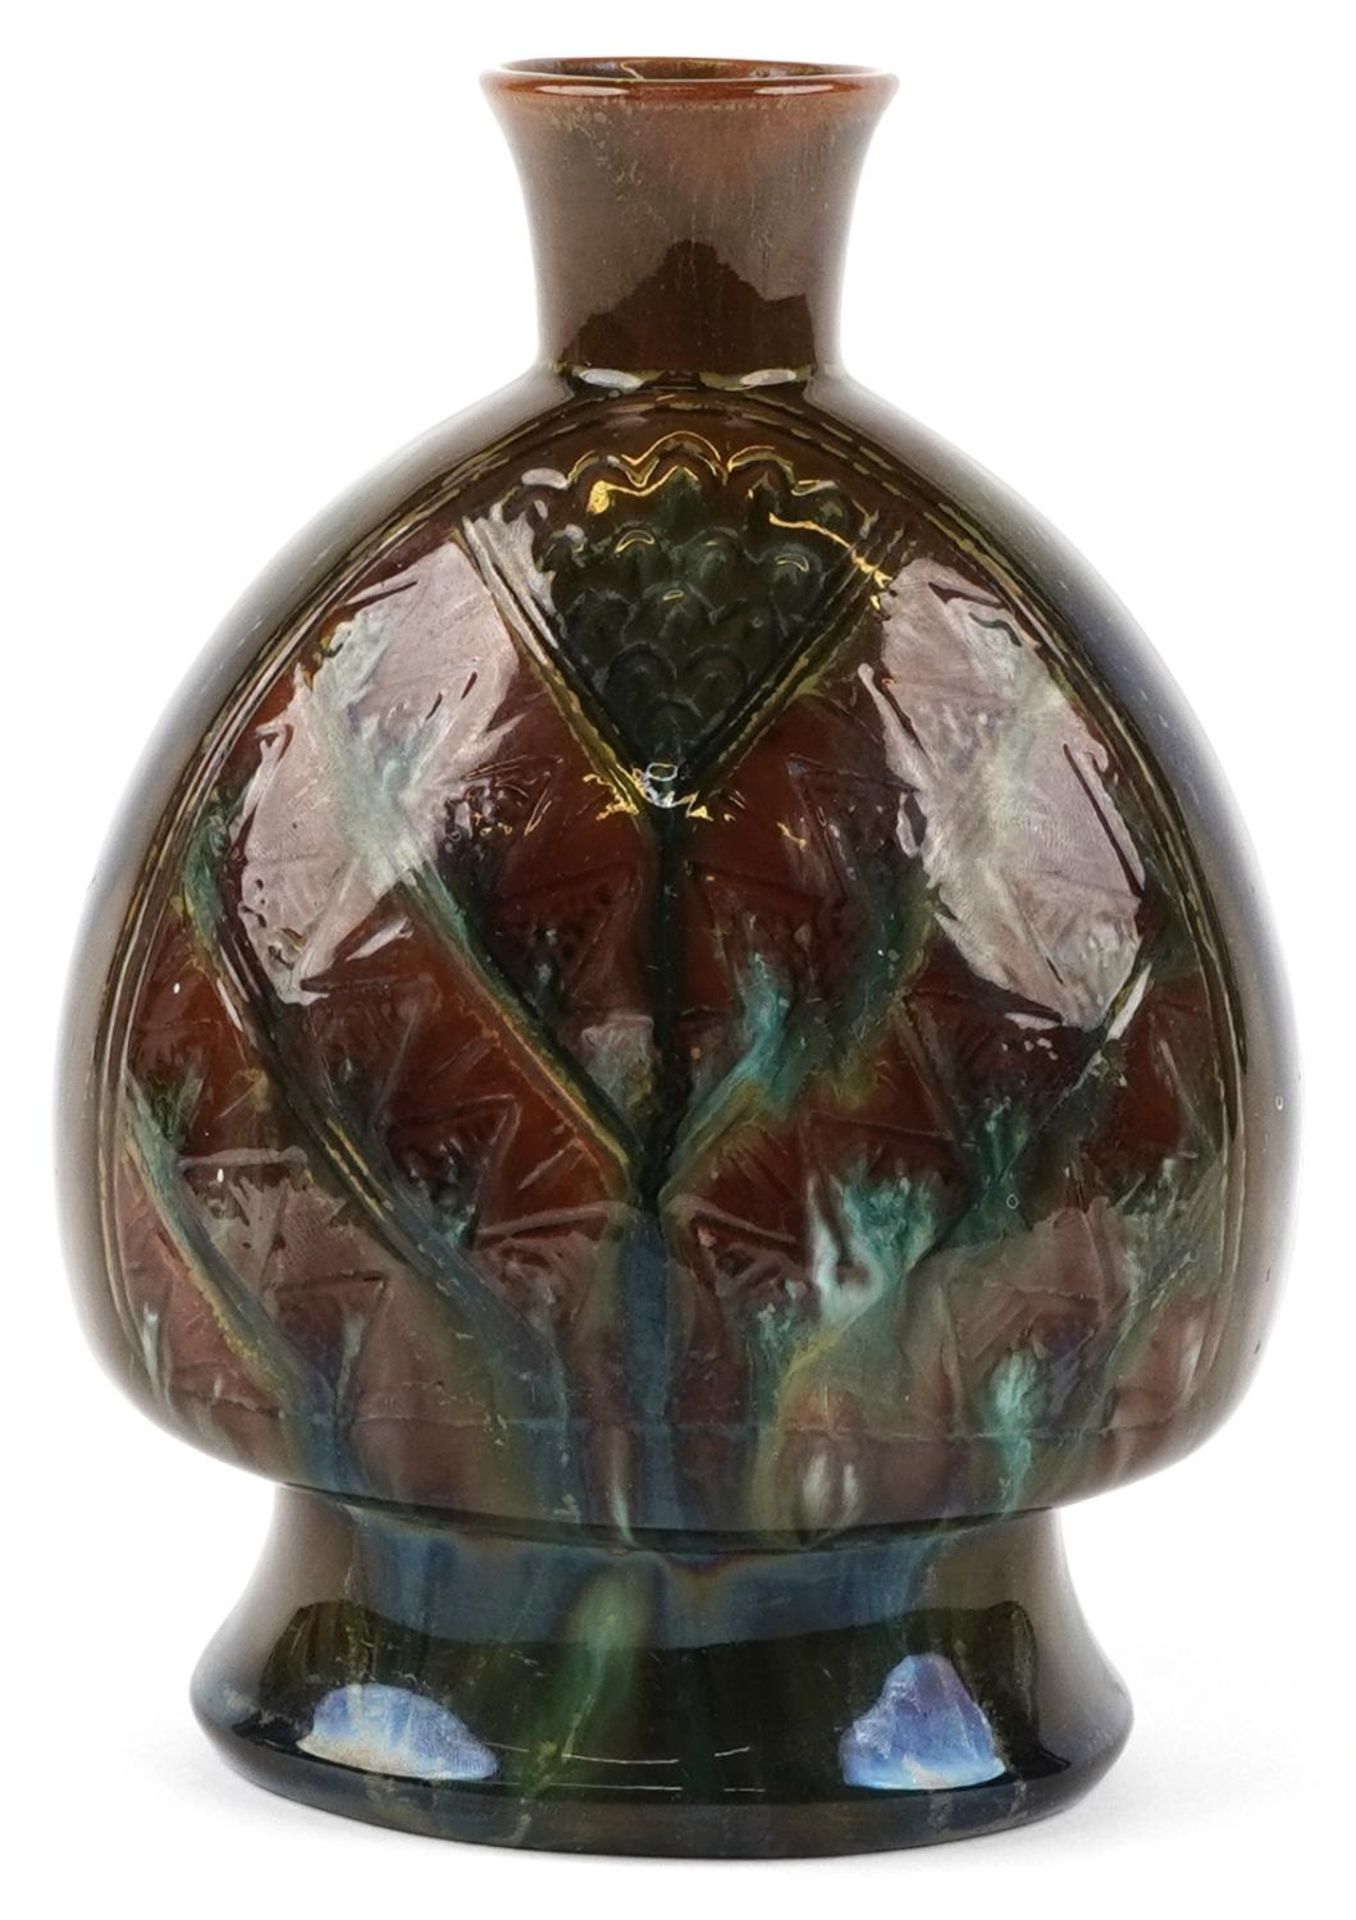 Christopher Dresser for Linthorpe, Arts and crafts vase having a brown and green mottled glaze